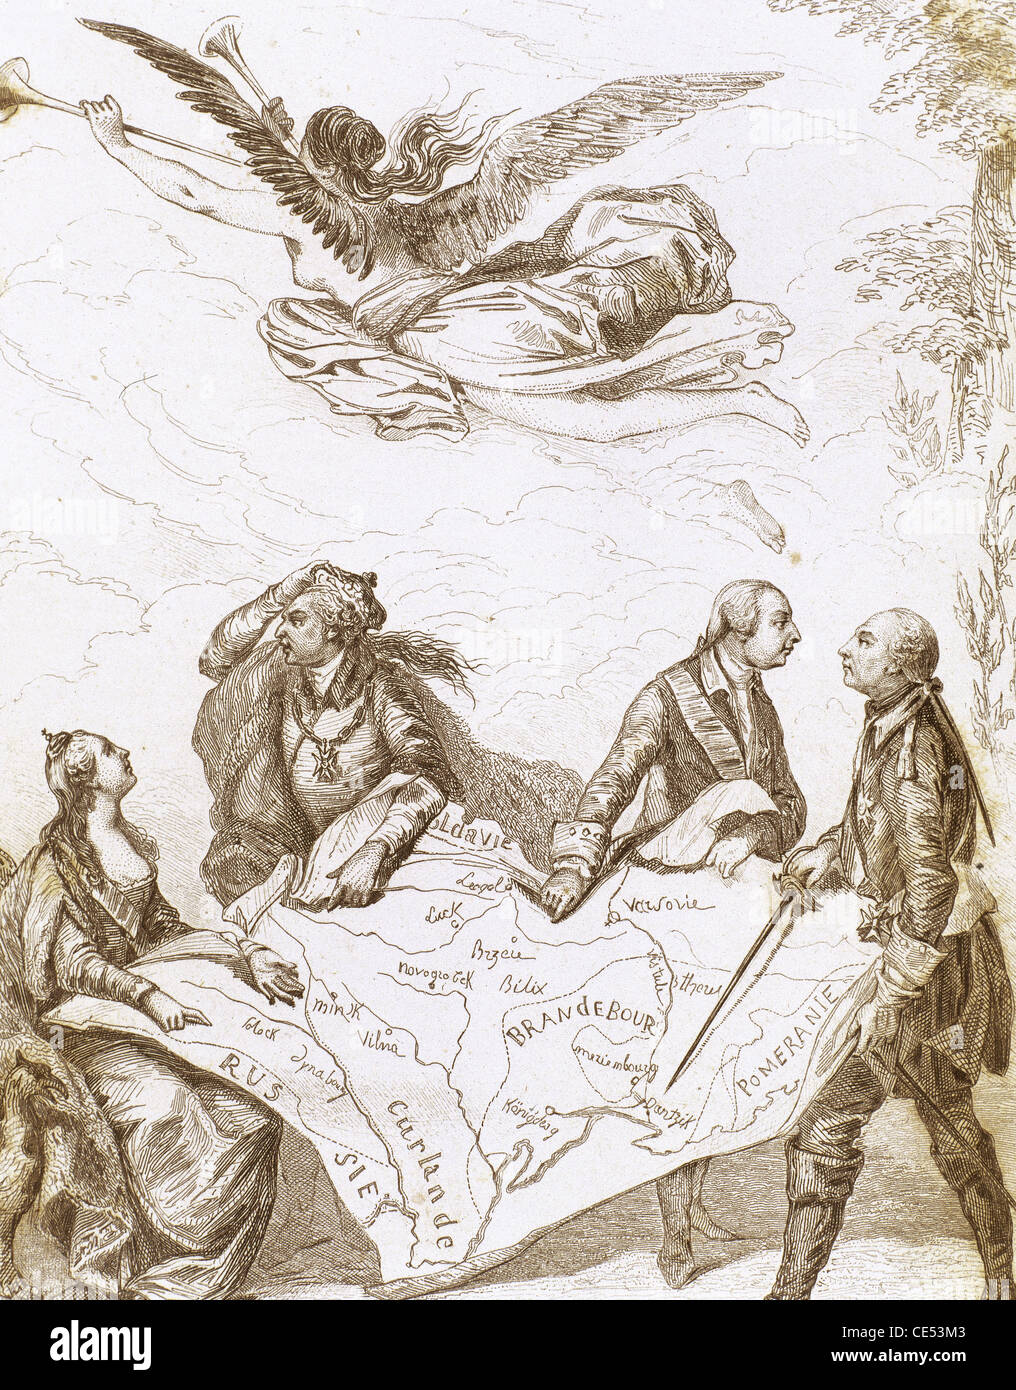 Allegorie der 1. Teilung Polens 1772. Nach Moreaus Malerei. Gravur. Stockfoto